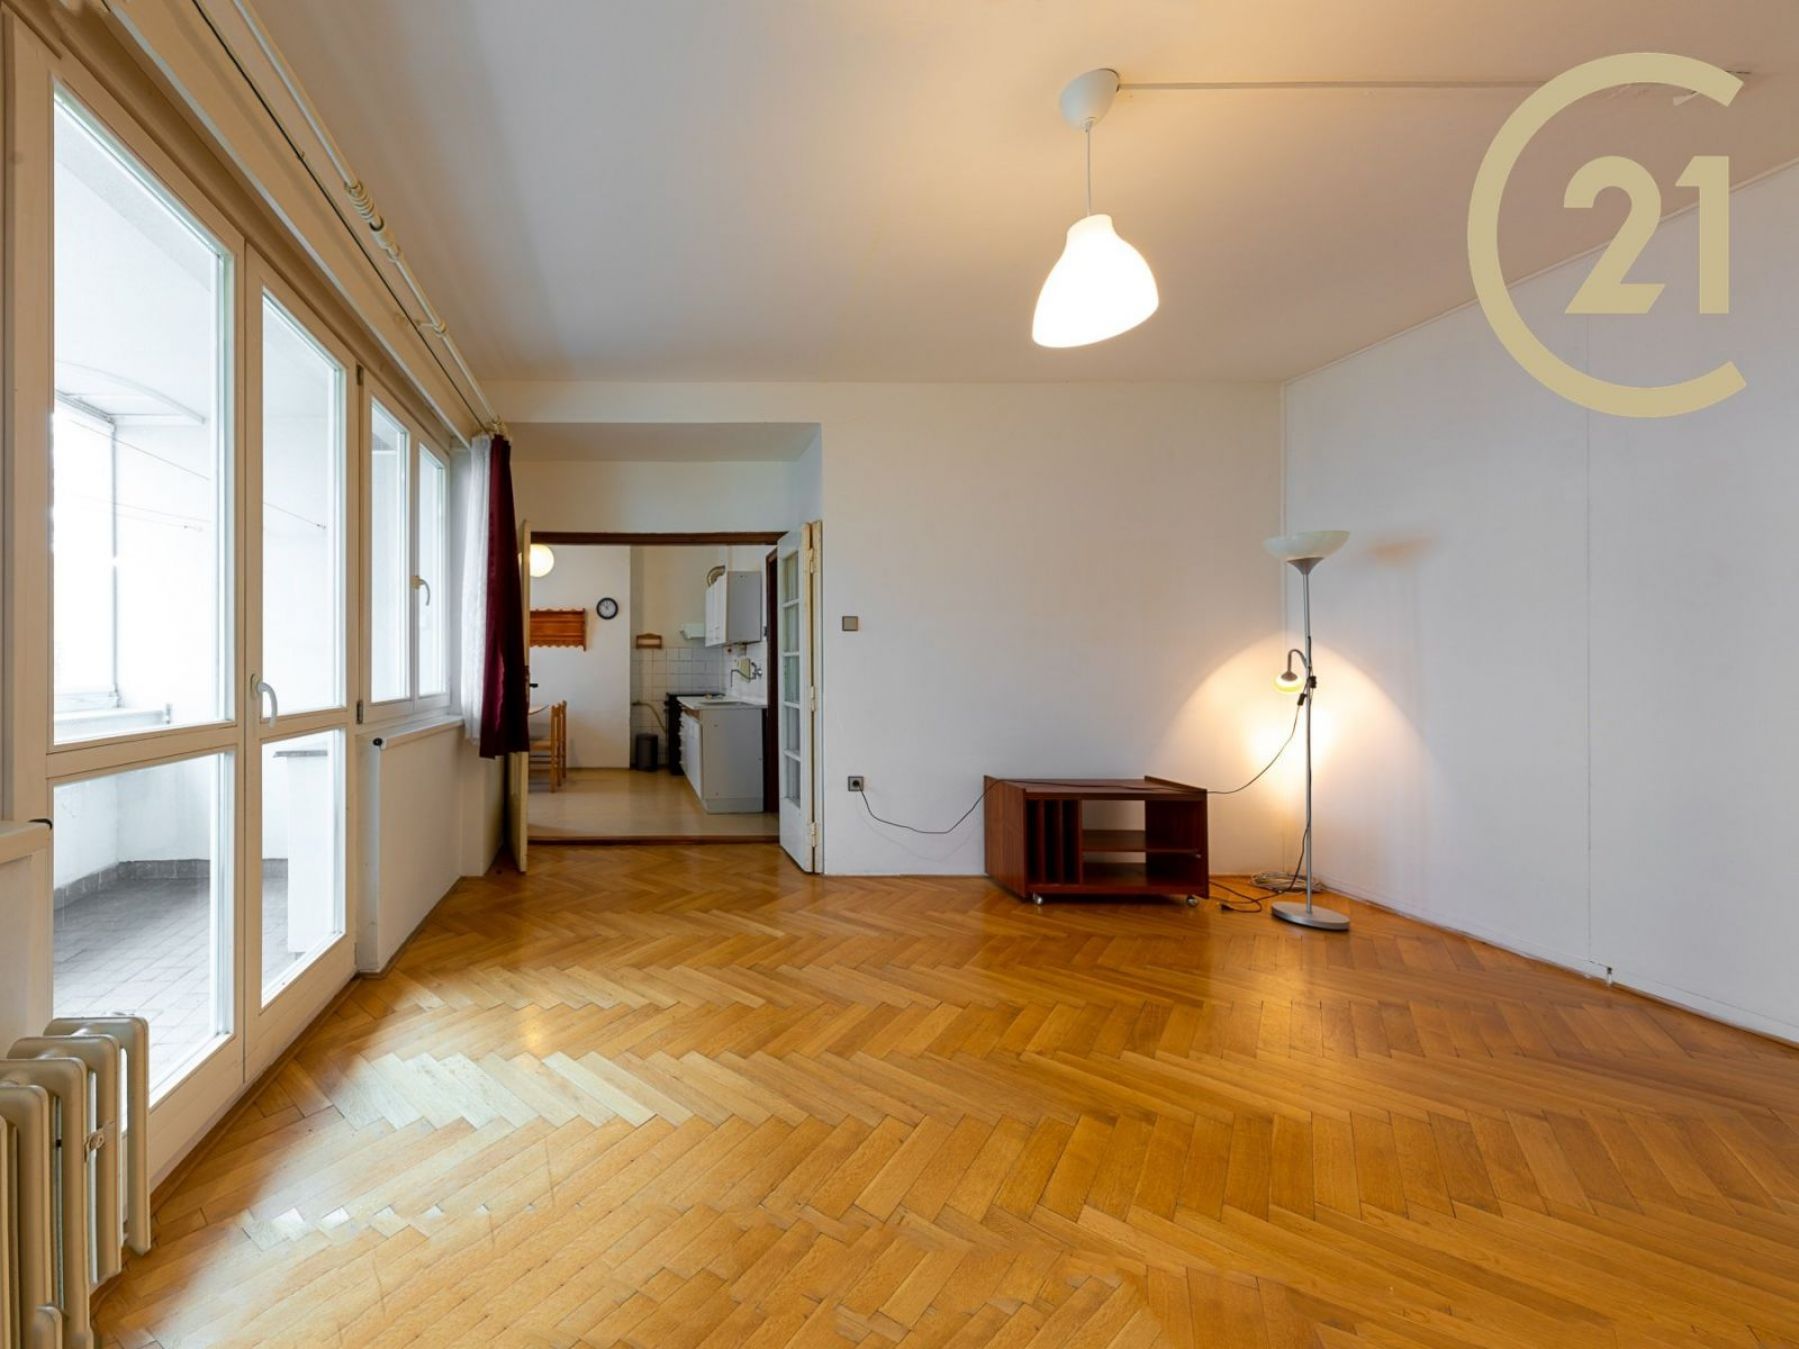 Prodej bytu 4+1, 100m2, 2x lodžie, rozlehlý sklep, dvojgaráž - Praha 6, Divoká Šárka, obrázek č. 2